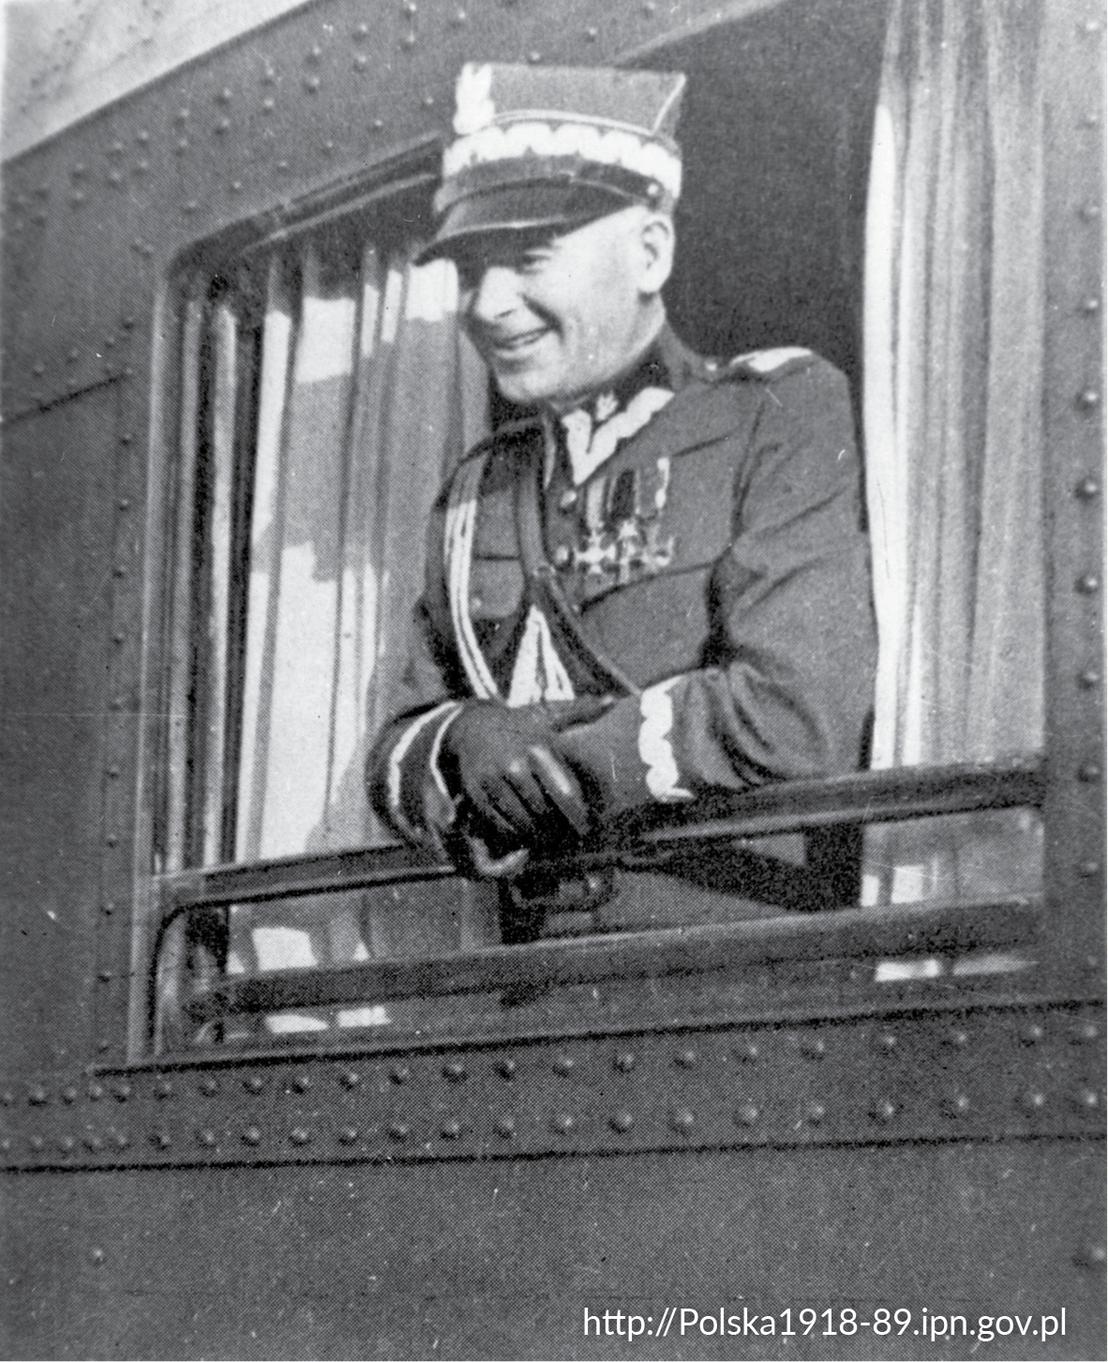 Marszałek Edward Śmigły-Rydz w mundurze, wychylający się przez otwarte okno pociągu